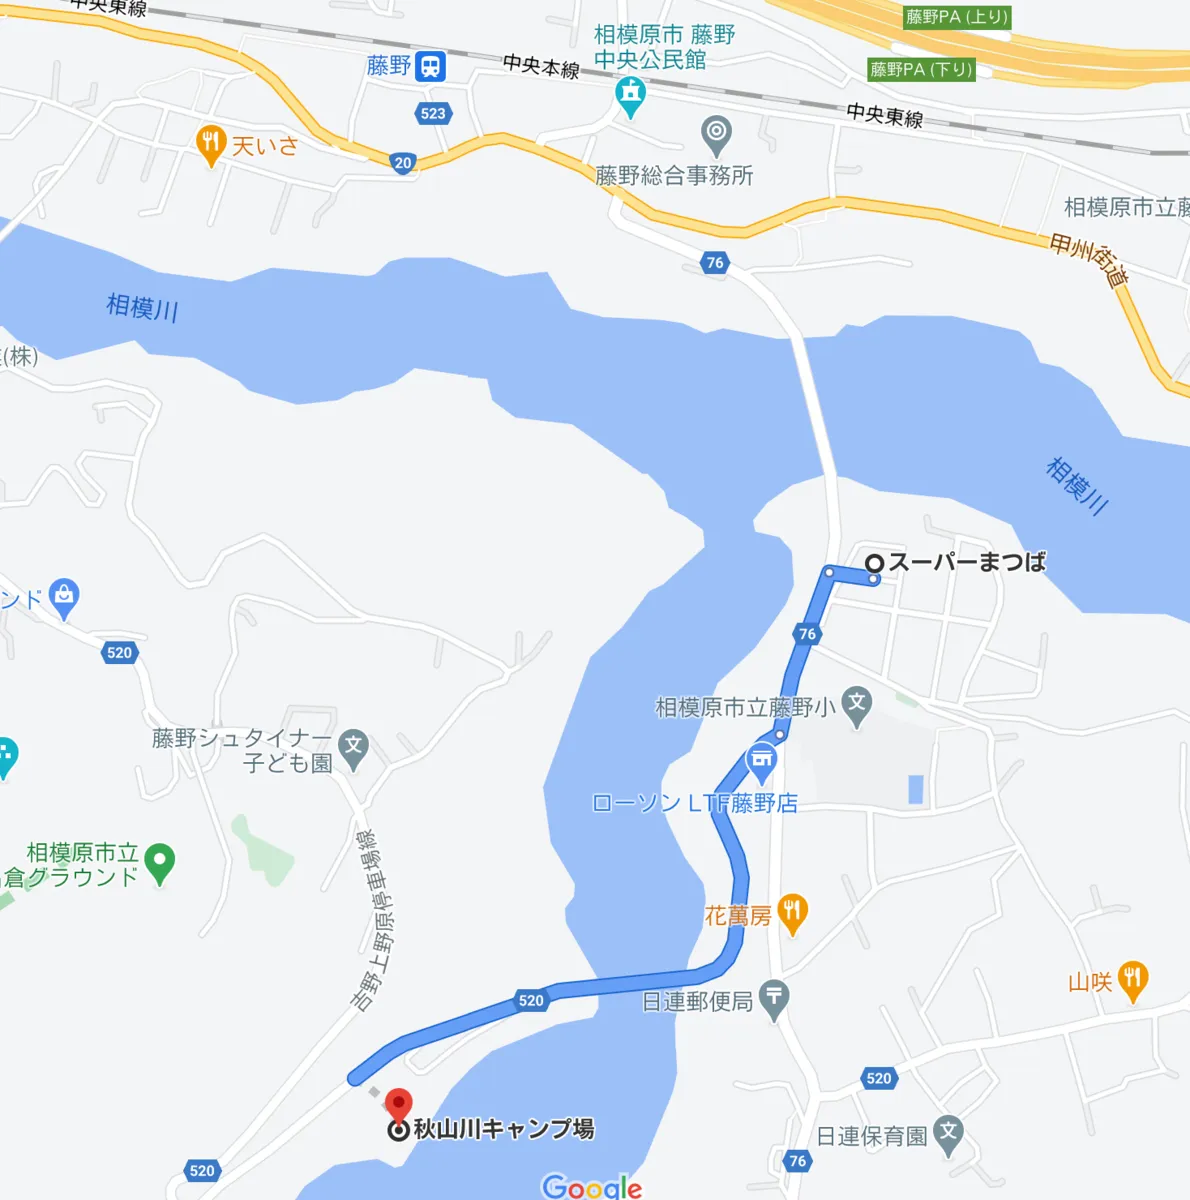 スーパーまつばから秋山川キャンプ場までの地図と経路